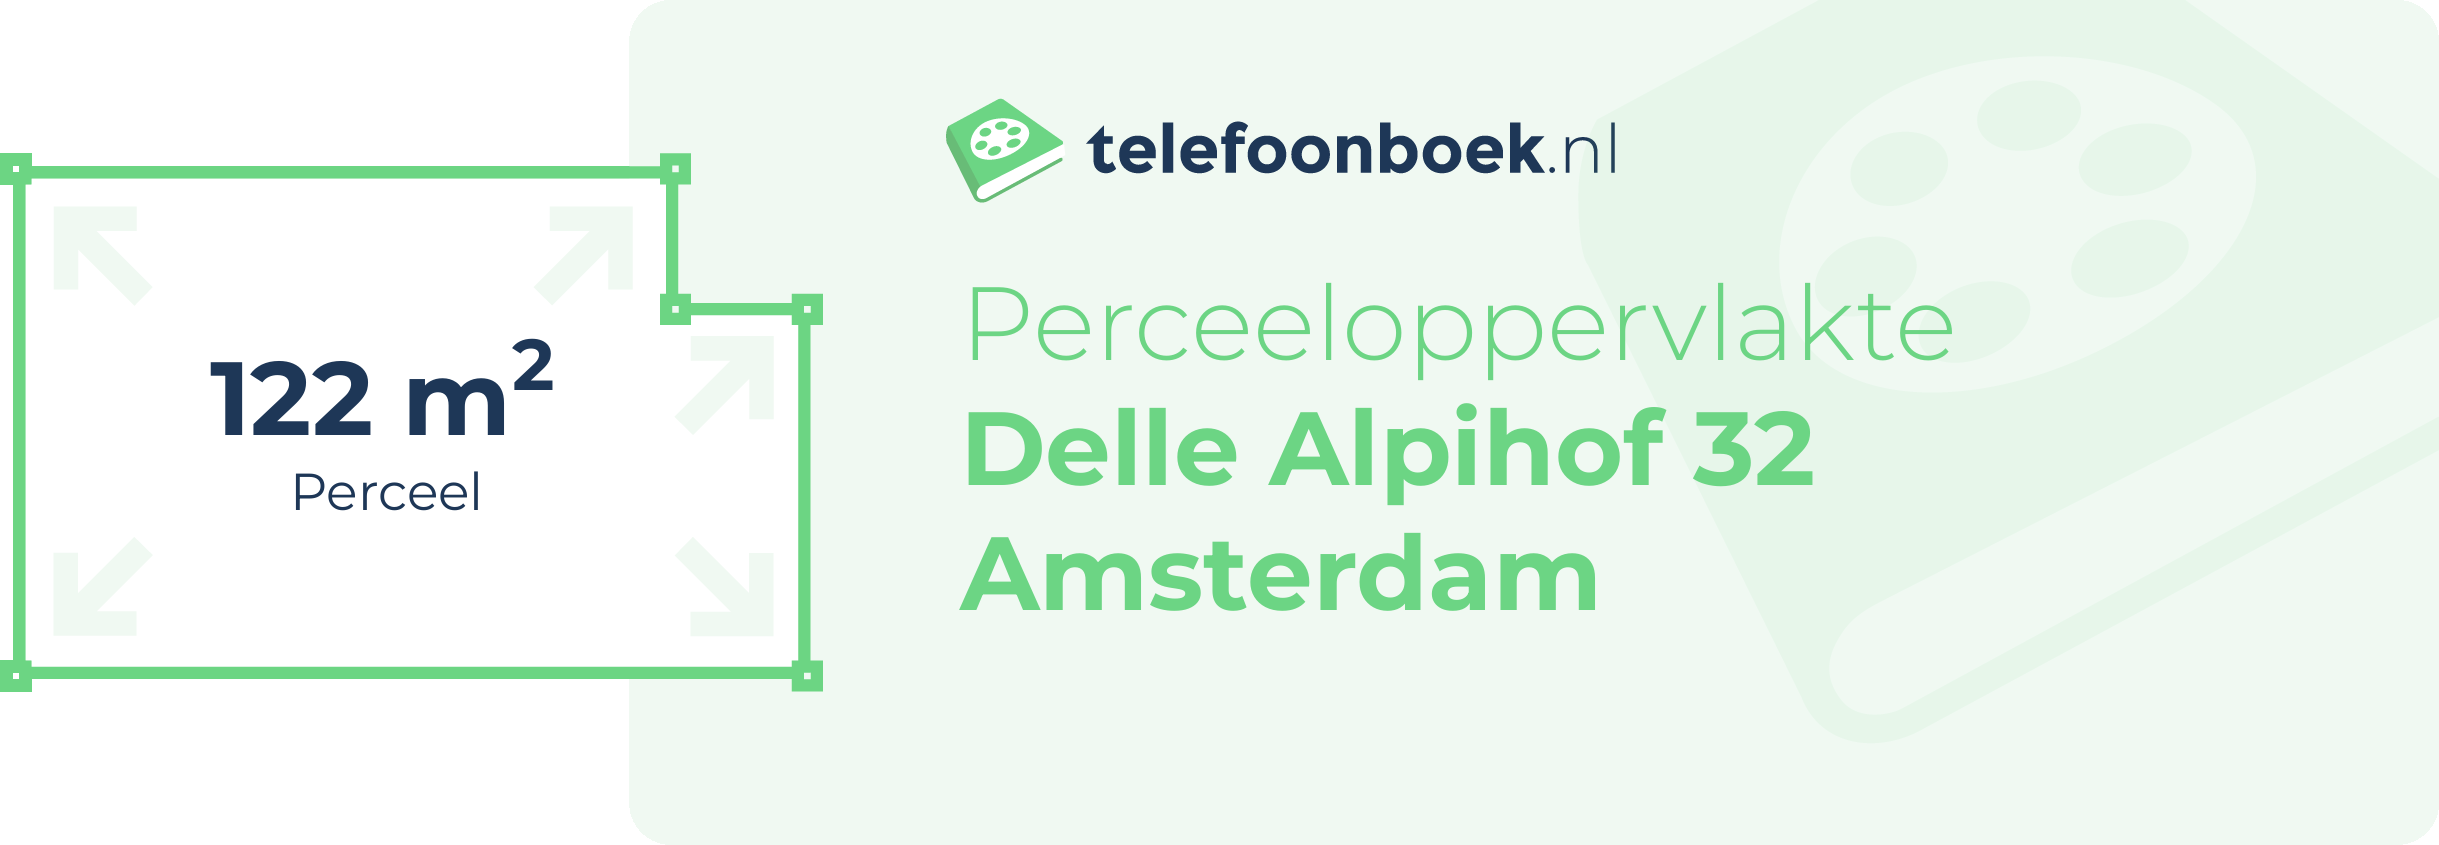 Perceeloppervlakte Delle Alpihof 32 Amsterdam